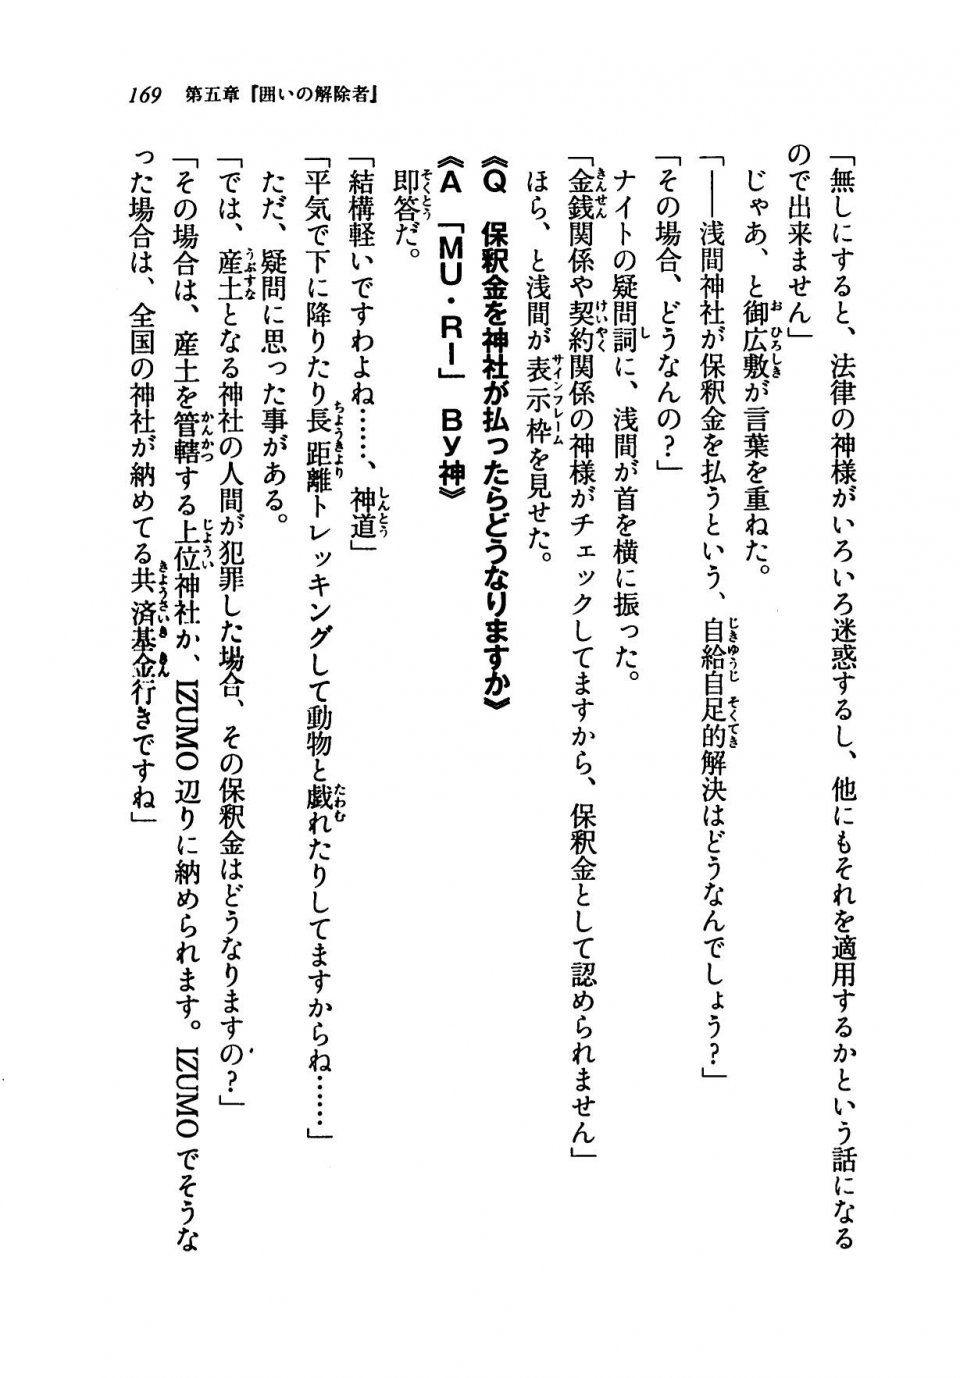 Kyoukai Senjou no Horizon LN Vol 19(8A) - Photo #169